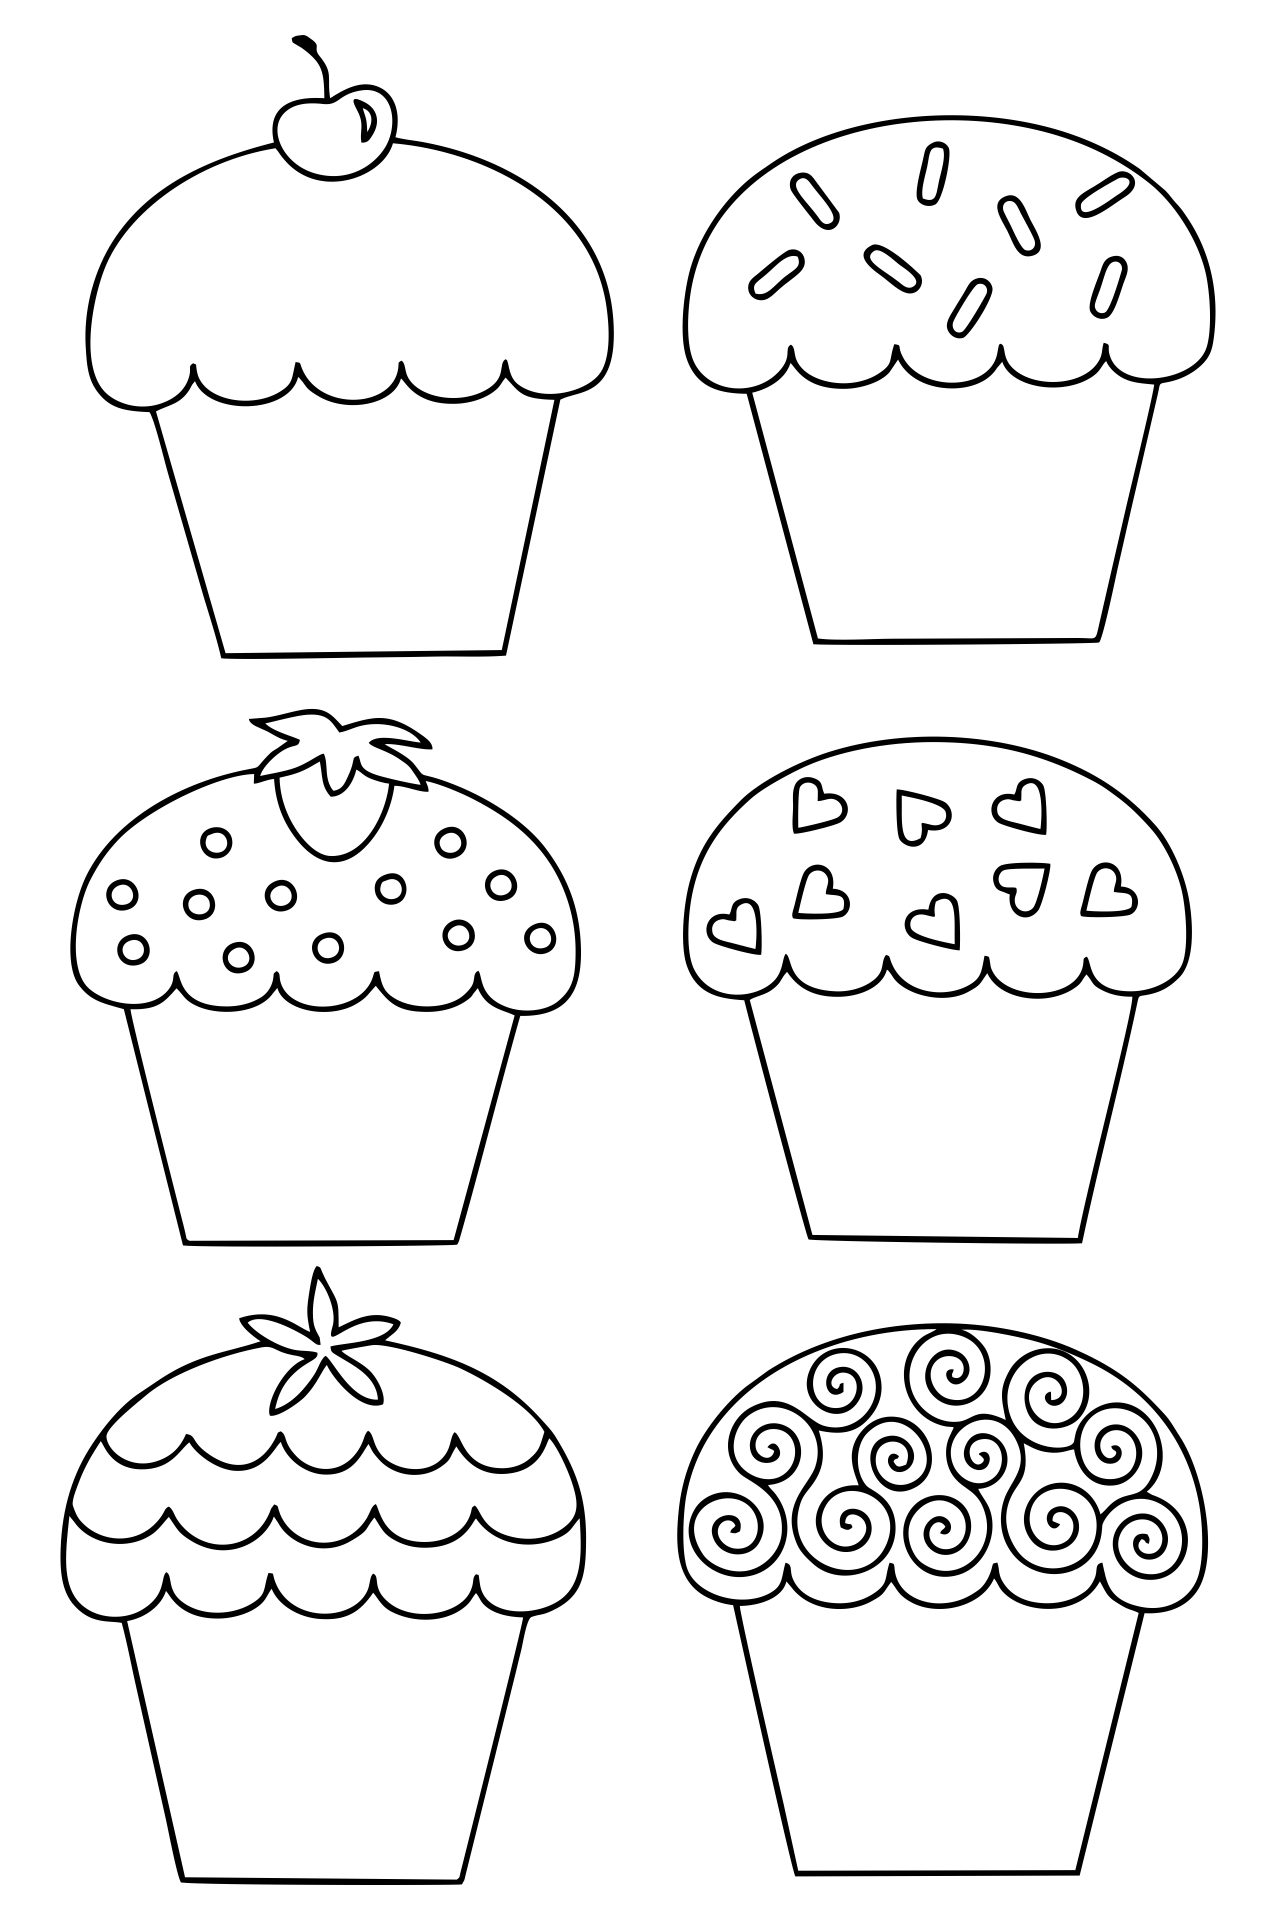 cupcake-template-free-printable-printable-templates